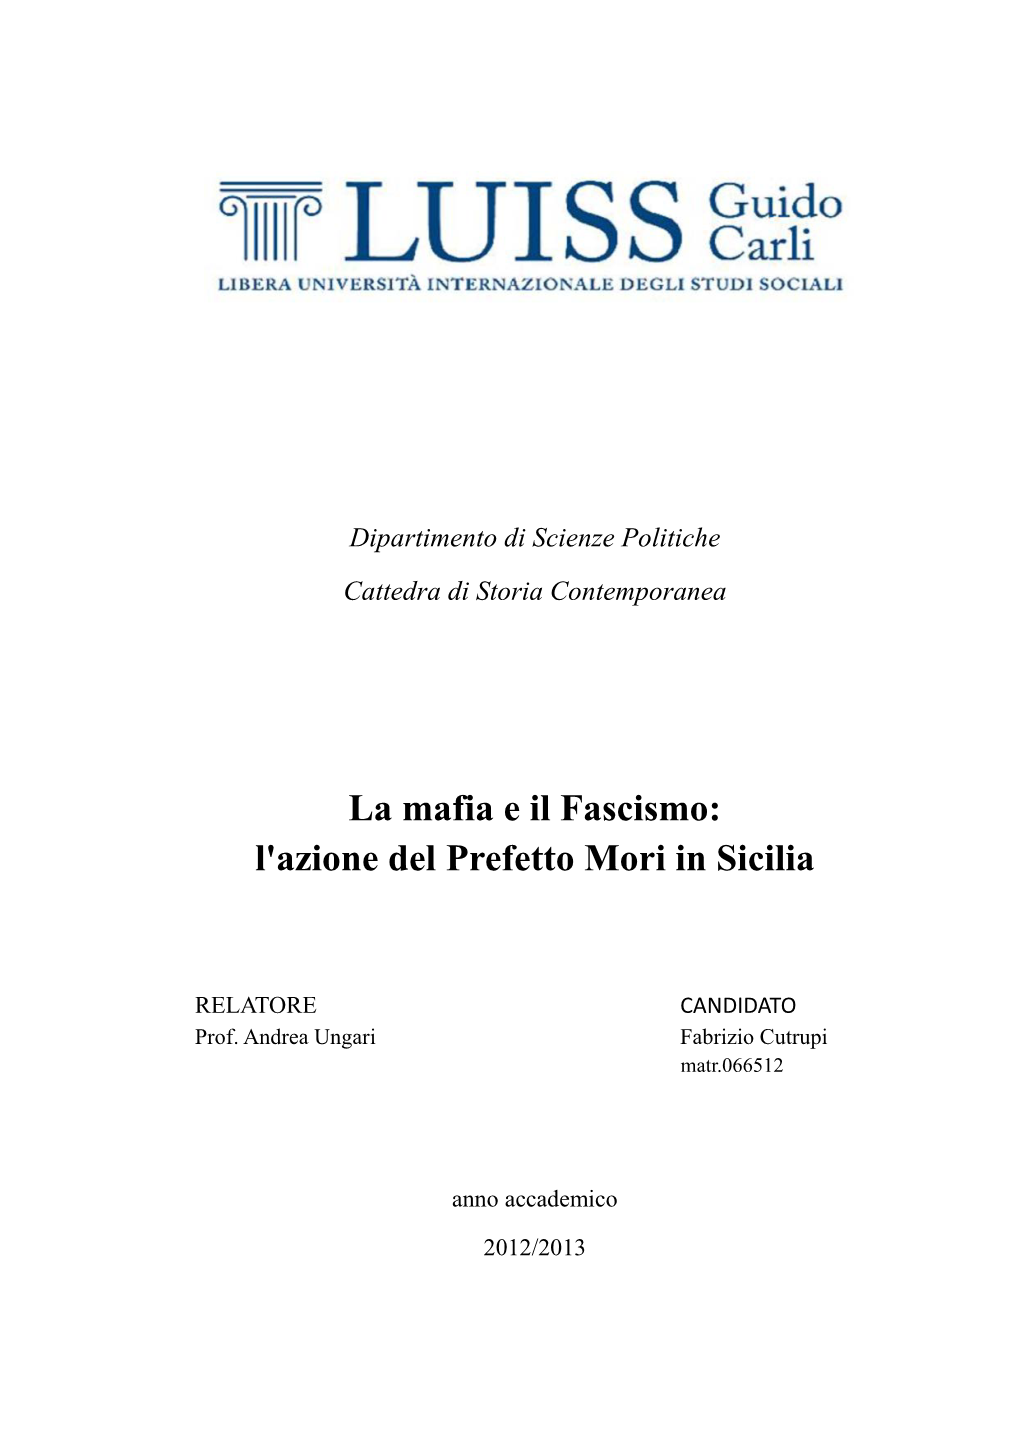 La Mafia E Il Fascismo: L'azione Del Prefetto Mori in Sicilia